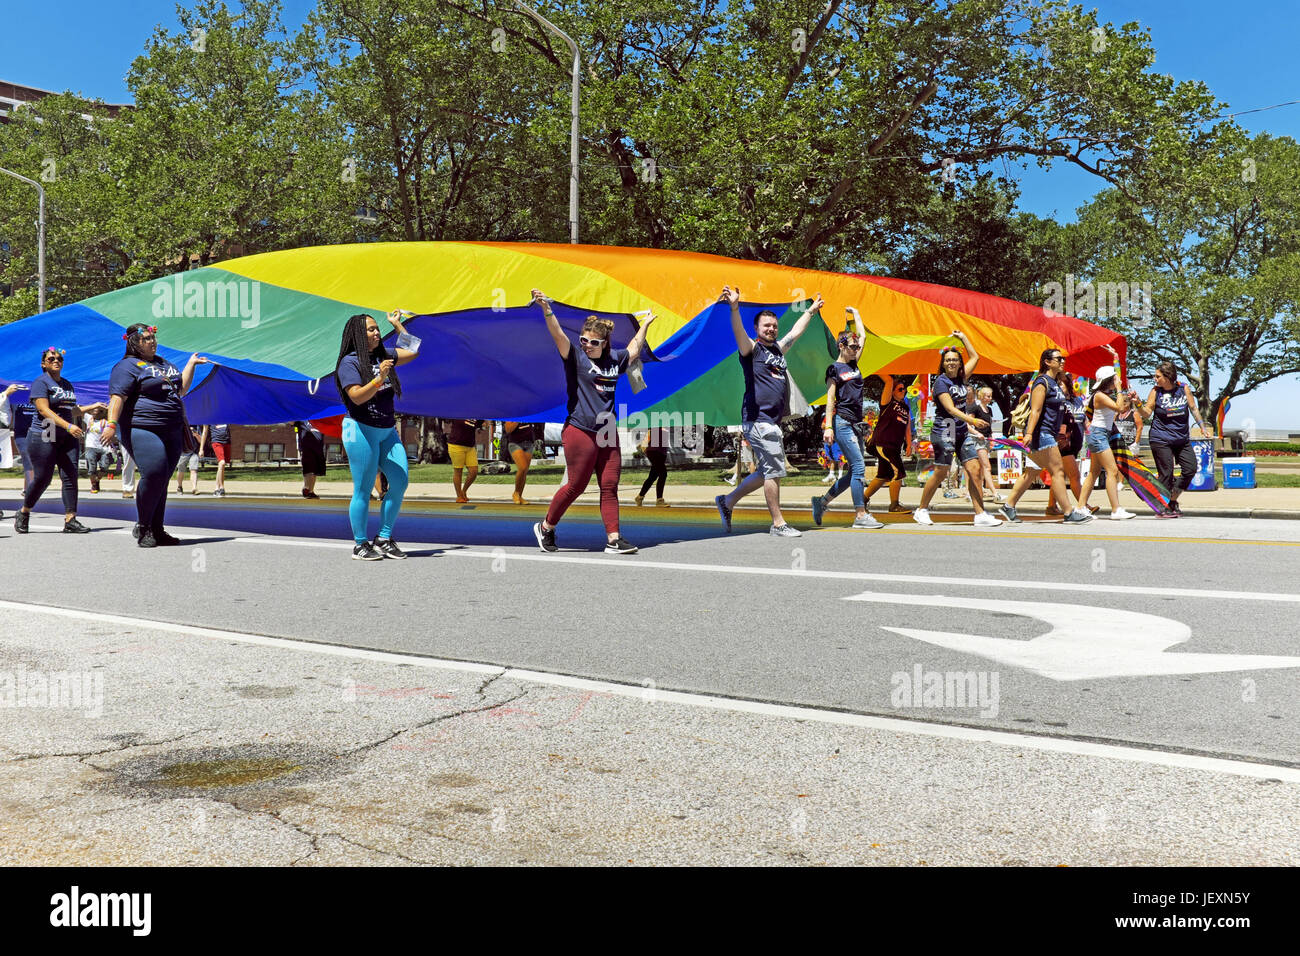 Junge Menschen tragen eine übergroße Regenbogenflagge Lakeside Avenue in Cleveland, Ohio während der jährliche LGBT Pride Parade am 24. Juni 2017. Stockfoto